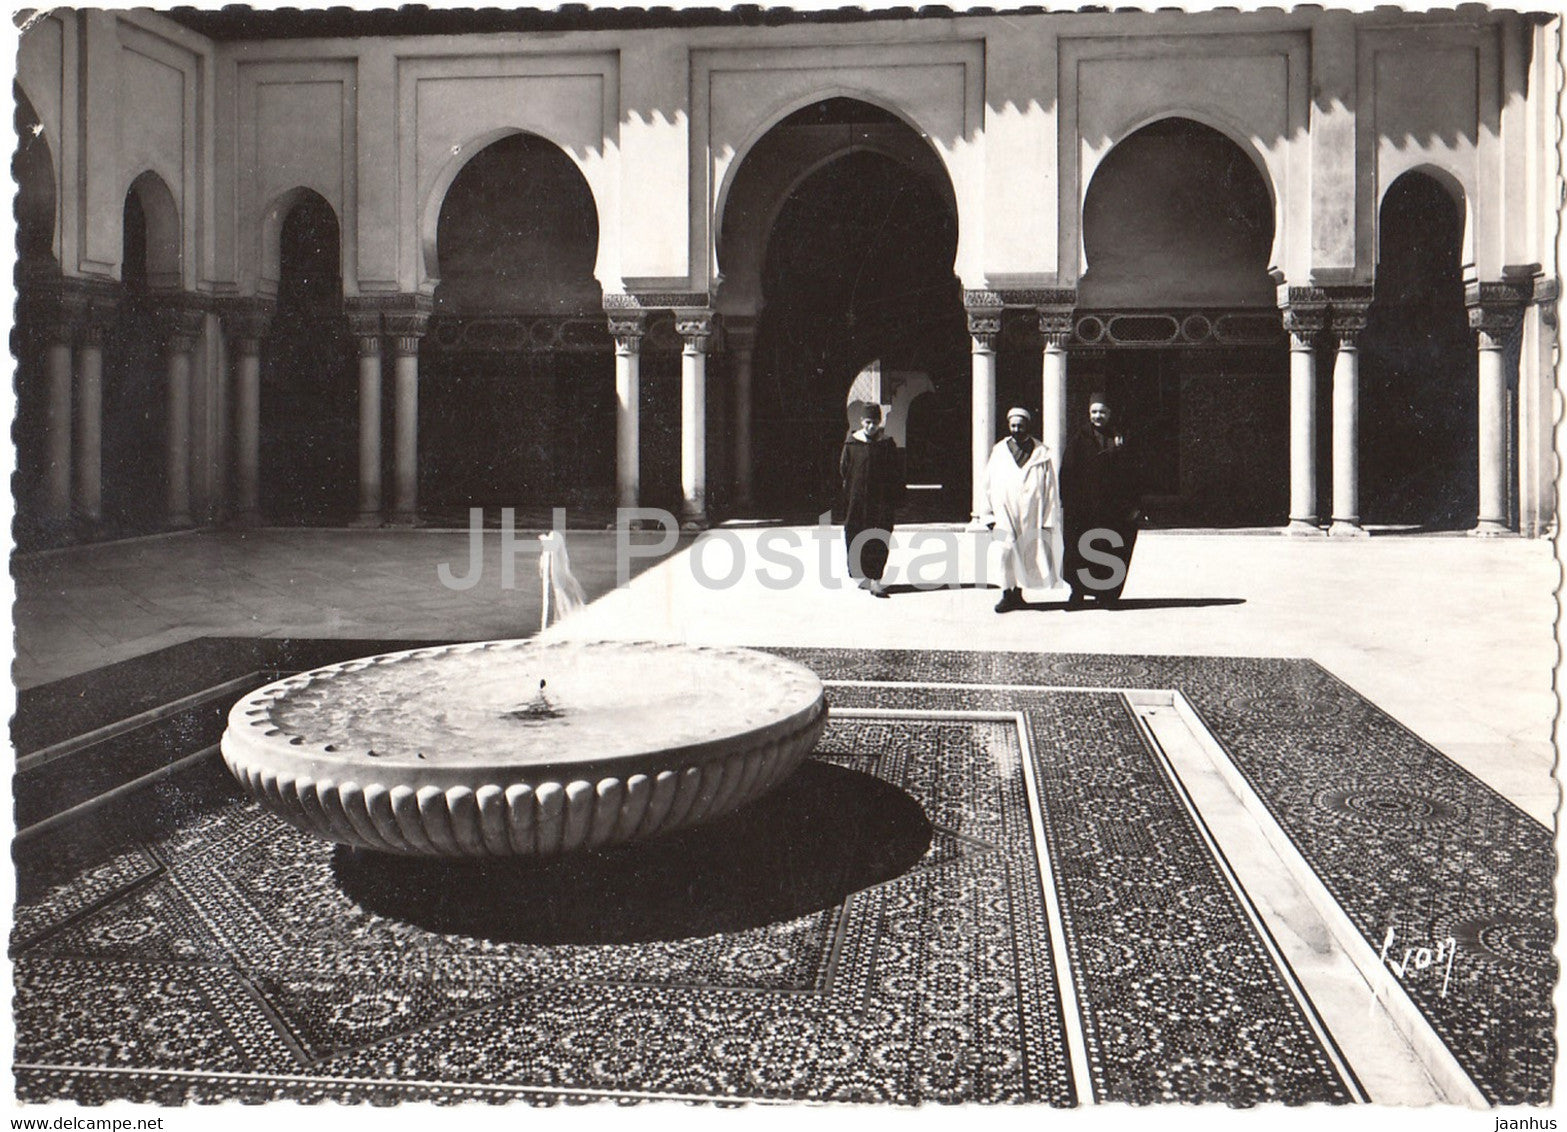 Paris - Institut Musulman  - Mosquee de Paris - Grand Patio - 1941 - France - used - JH Postcards